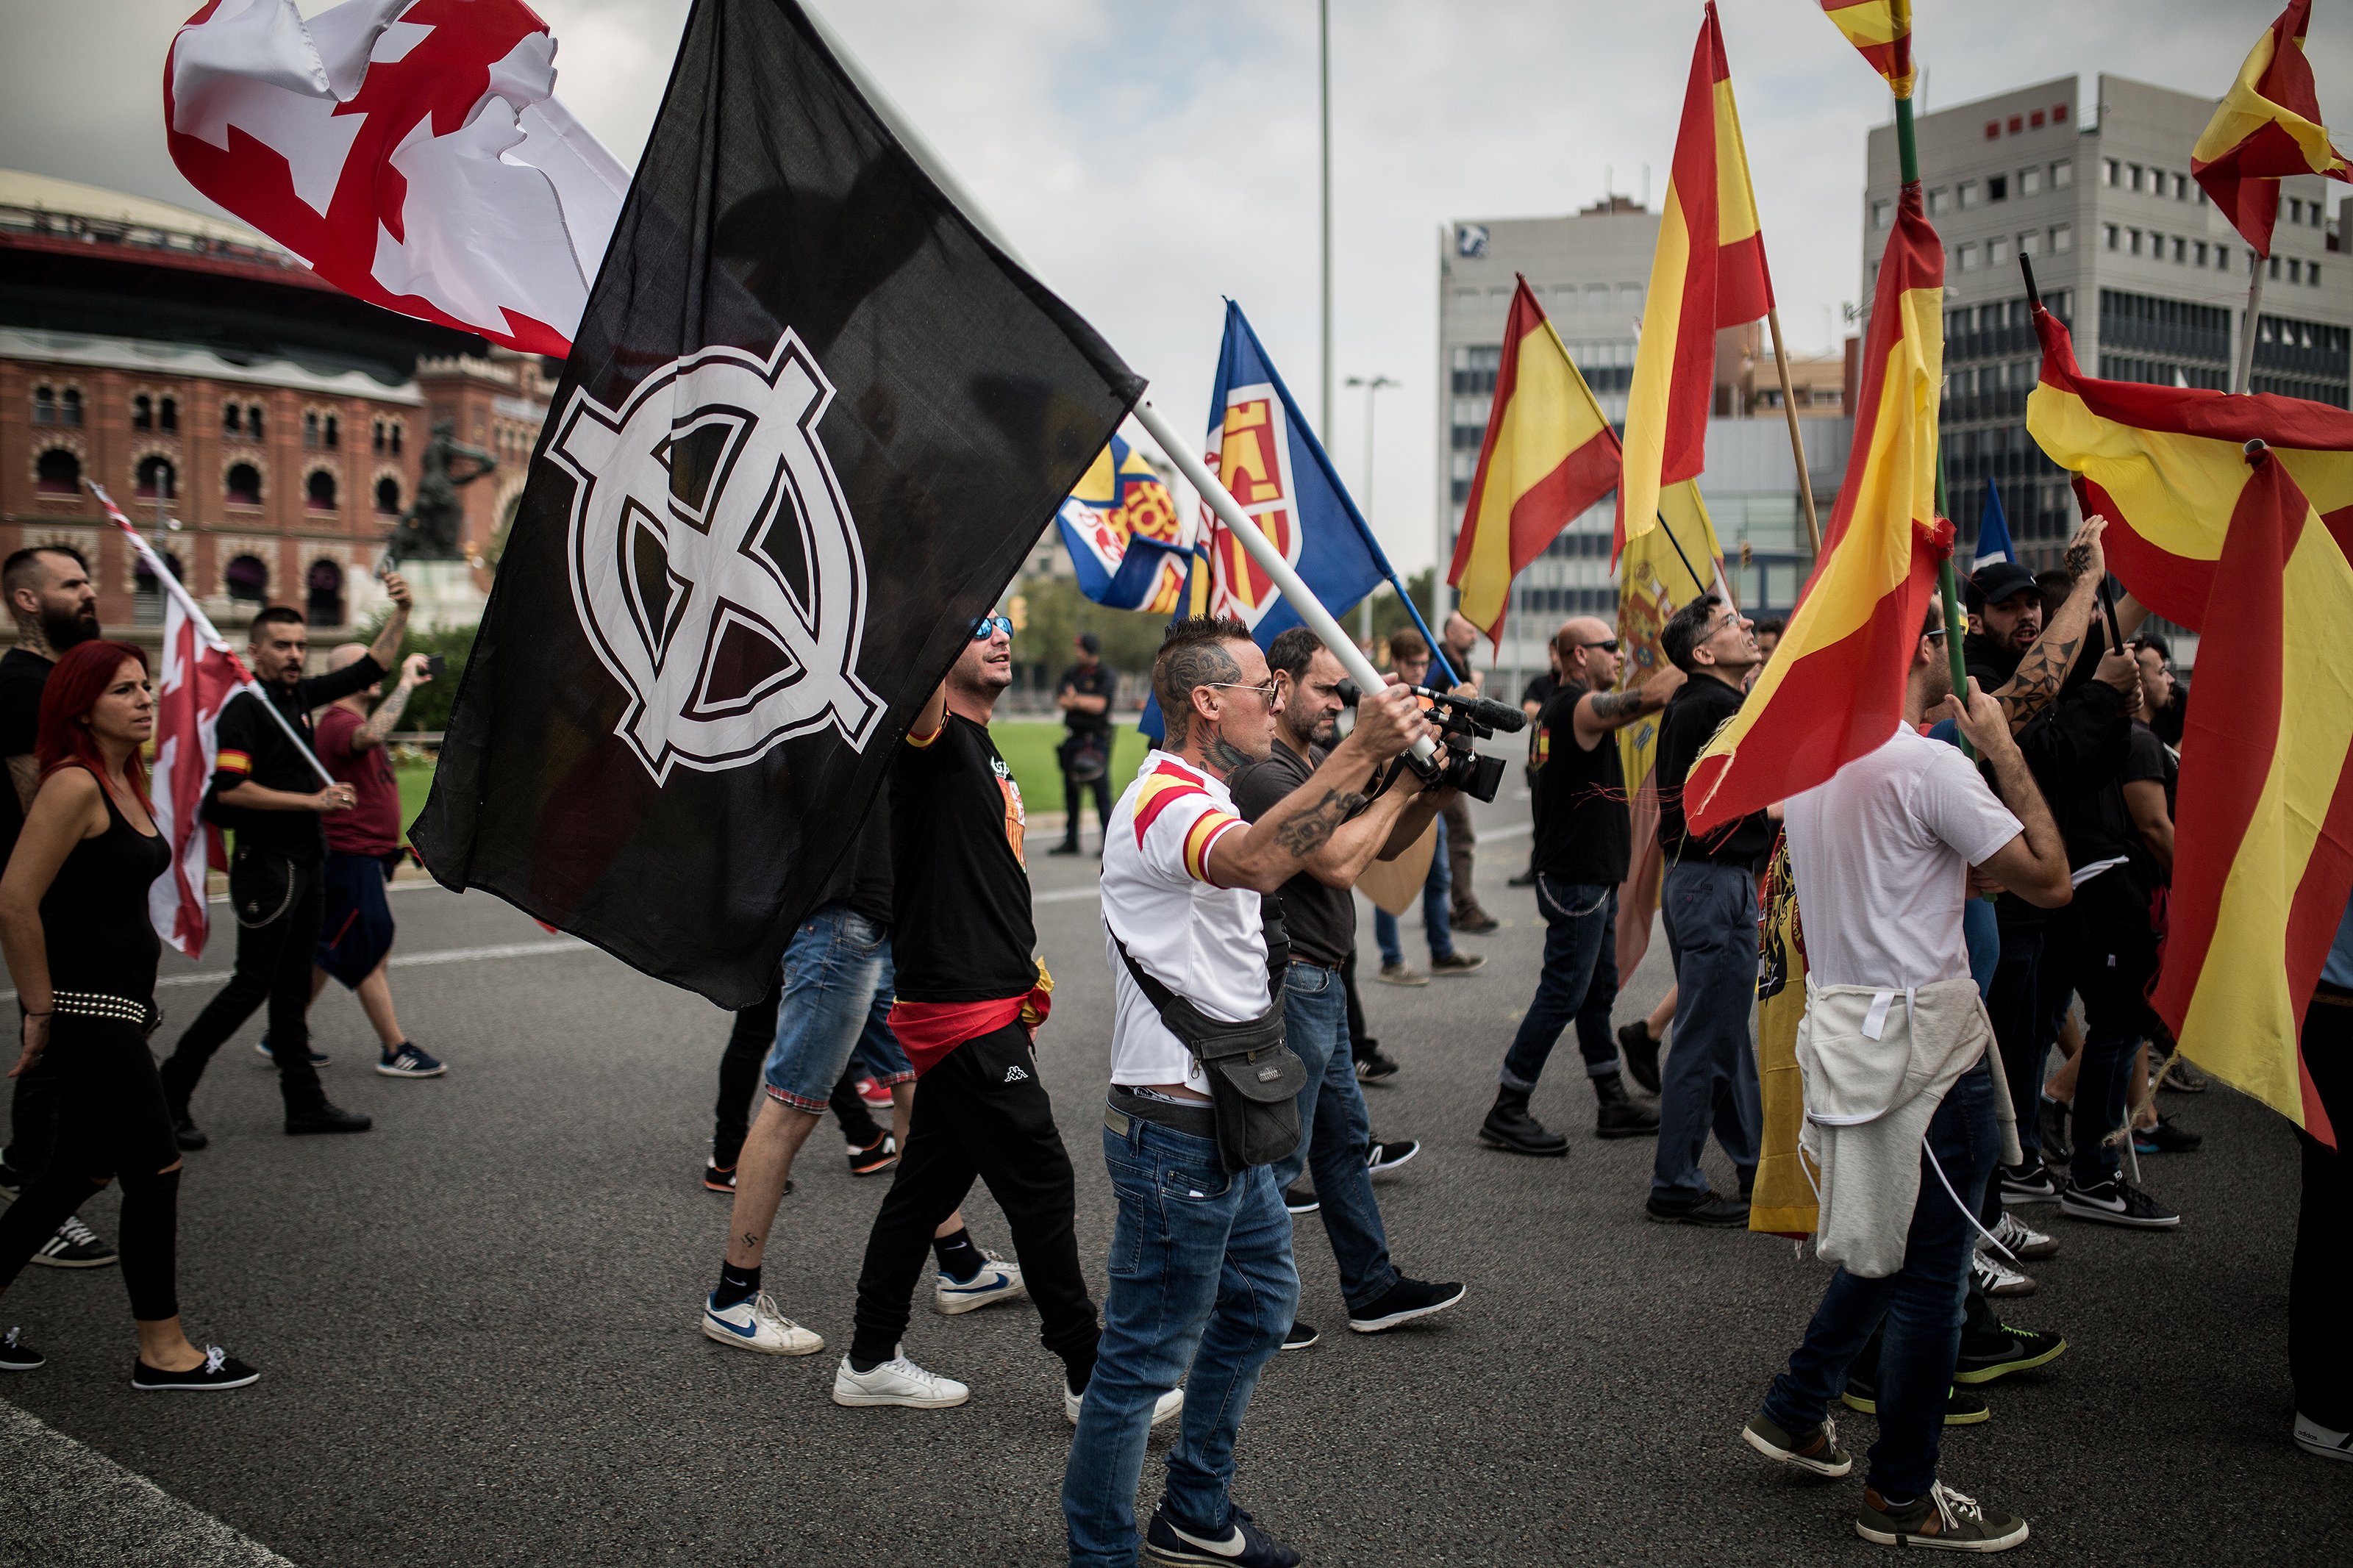 Al Jazeera ve un aumento del fascismo en Europa, "sobre todo en España con Vox"